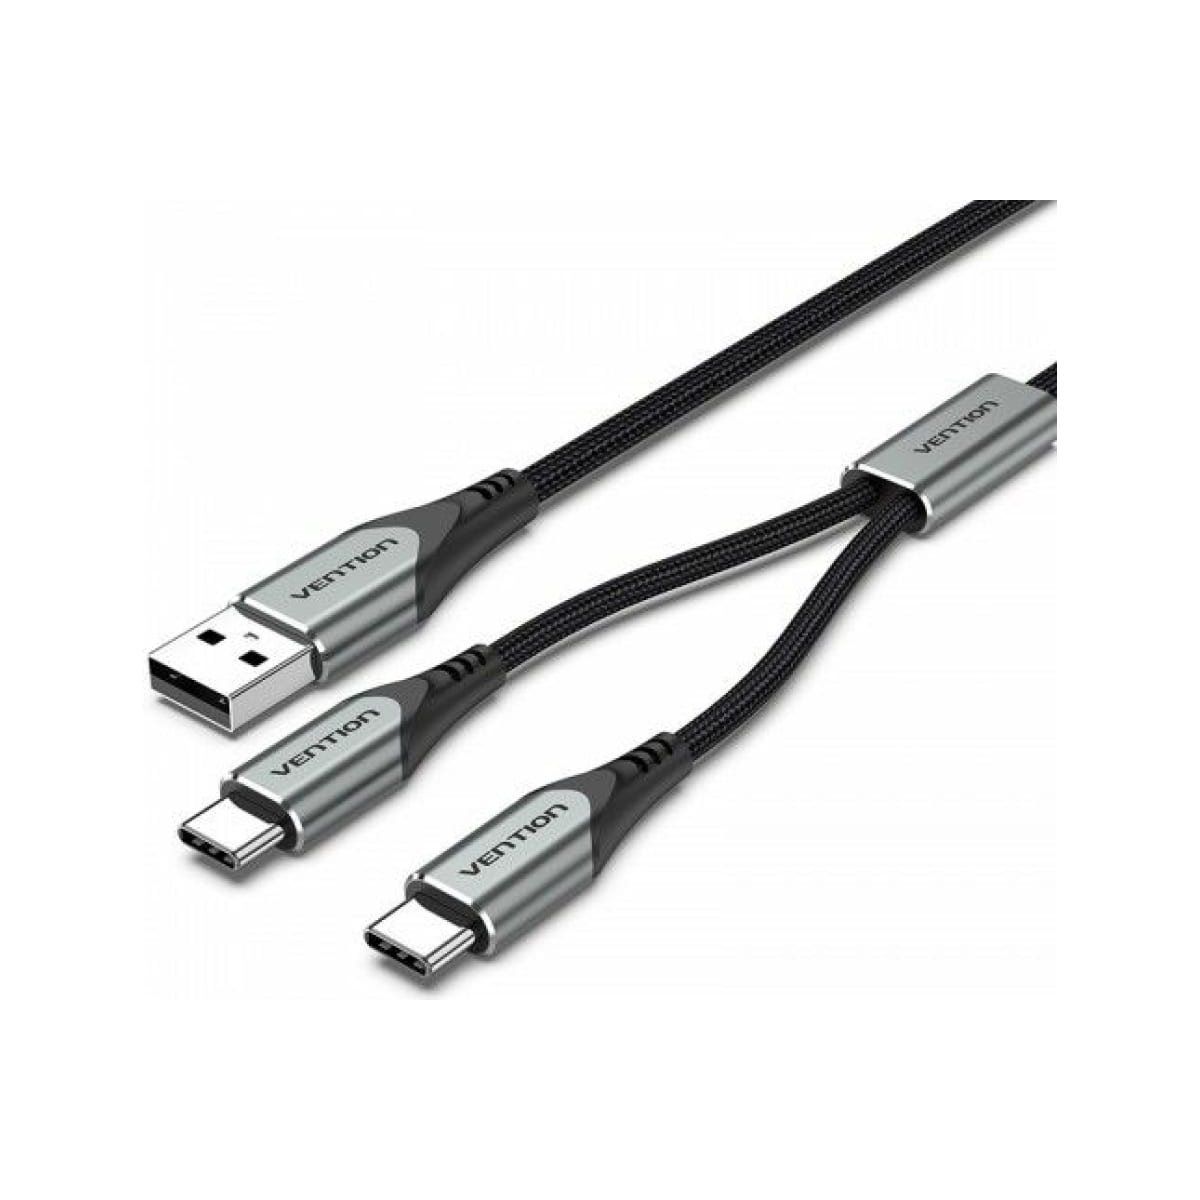 Кабель Vention USB-CM х 2/USB 2.0 AM - 1м. (CQOHF) кабель usb type c tidove 6 а 66 вт для быстрой зарядки и передачи данных кабель из жидкого силикона для samsung s21 s20 huawei xiaomi oppo vivo